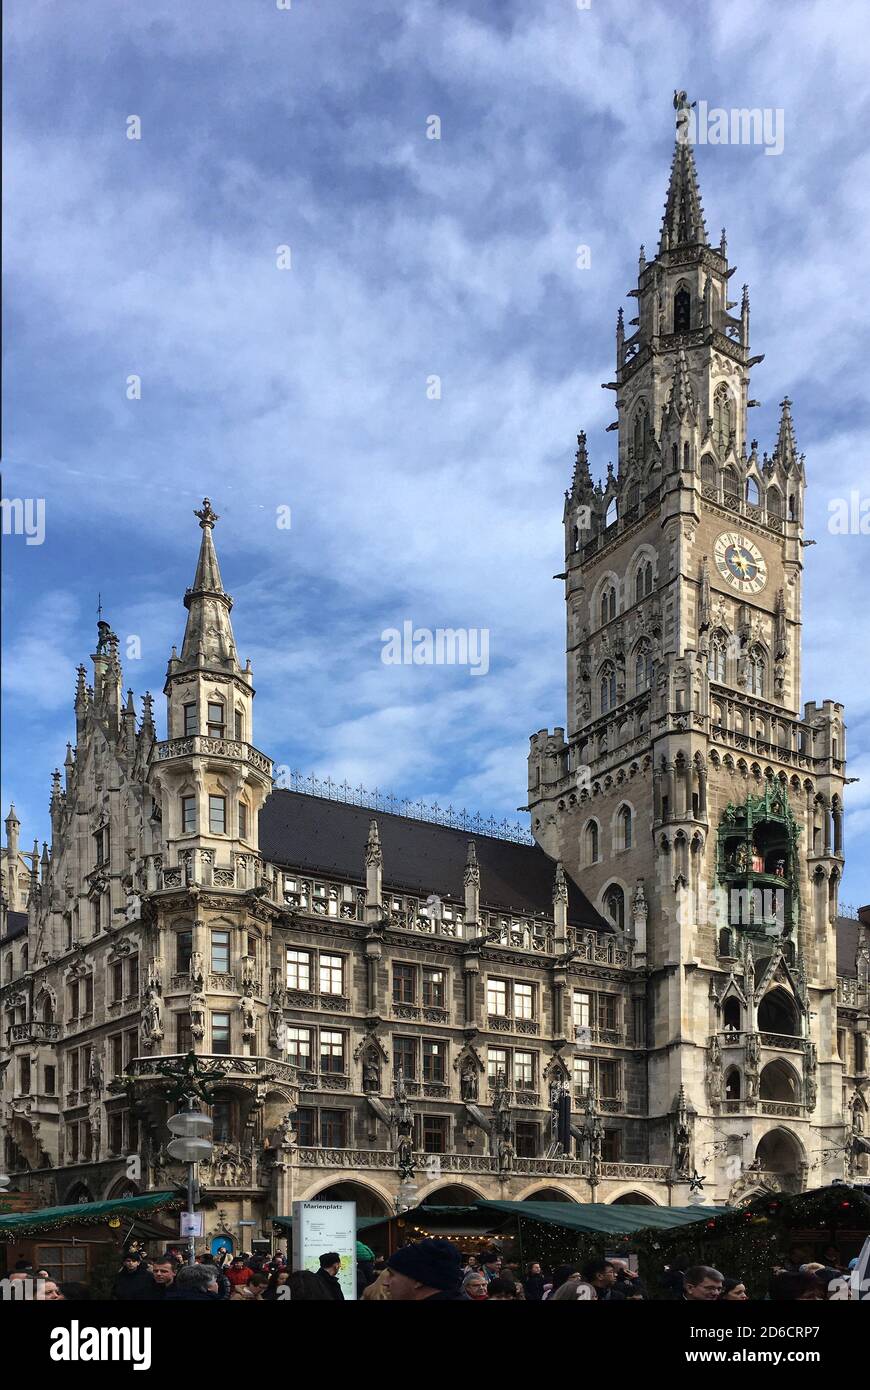 Neues Rathaus von München am Marienplatz mit dem Sitz des Oberbürgermeisters der bayerischen Landeshauptstadt - Deutschland. Stockfoto